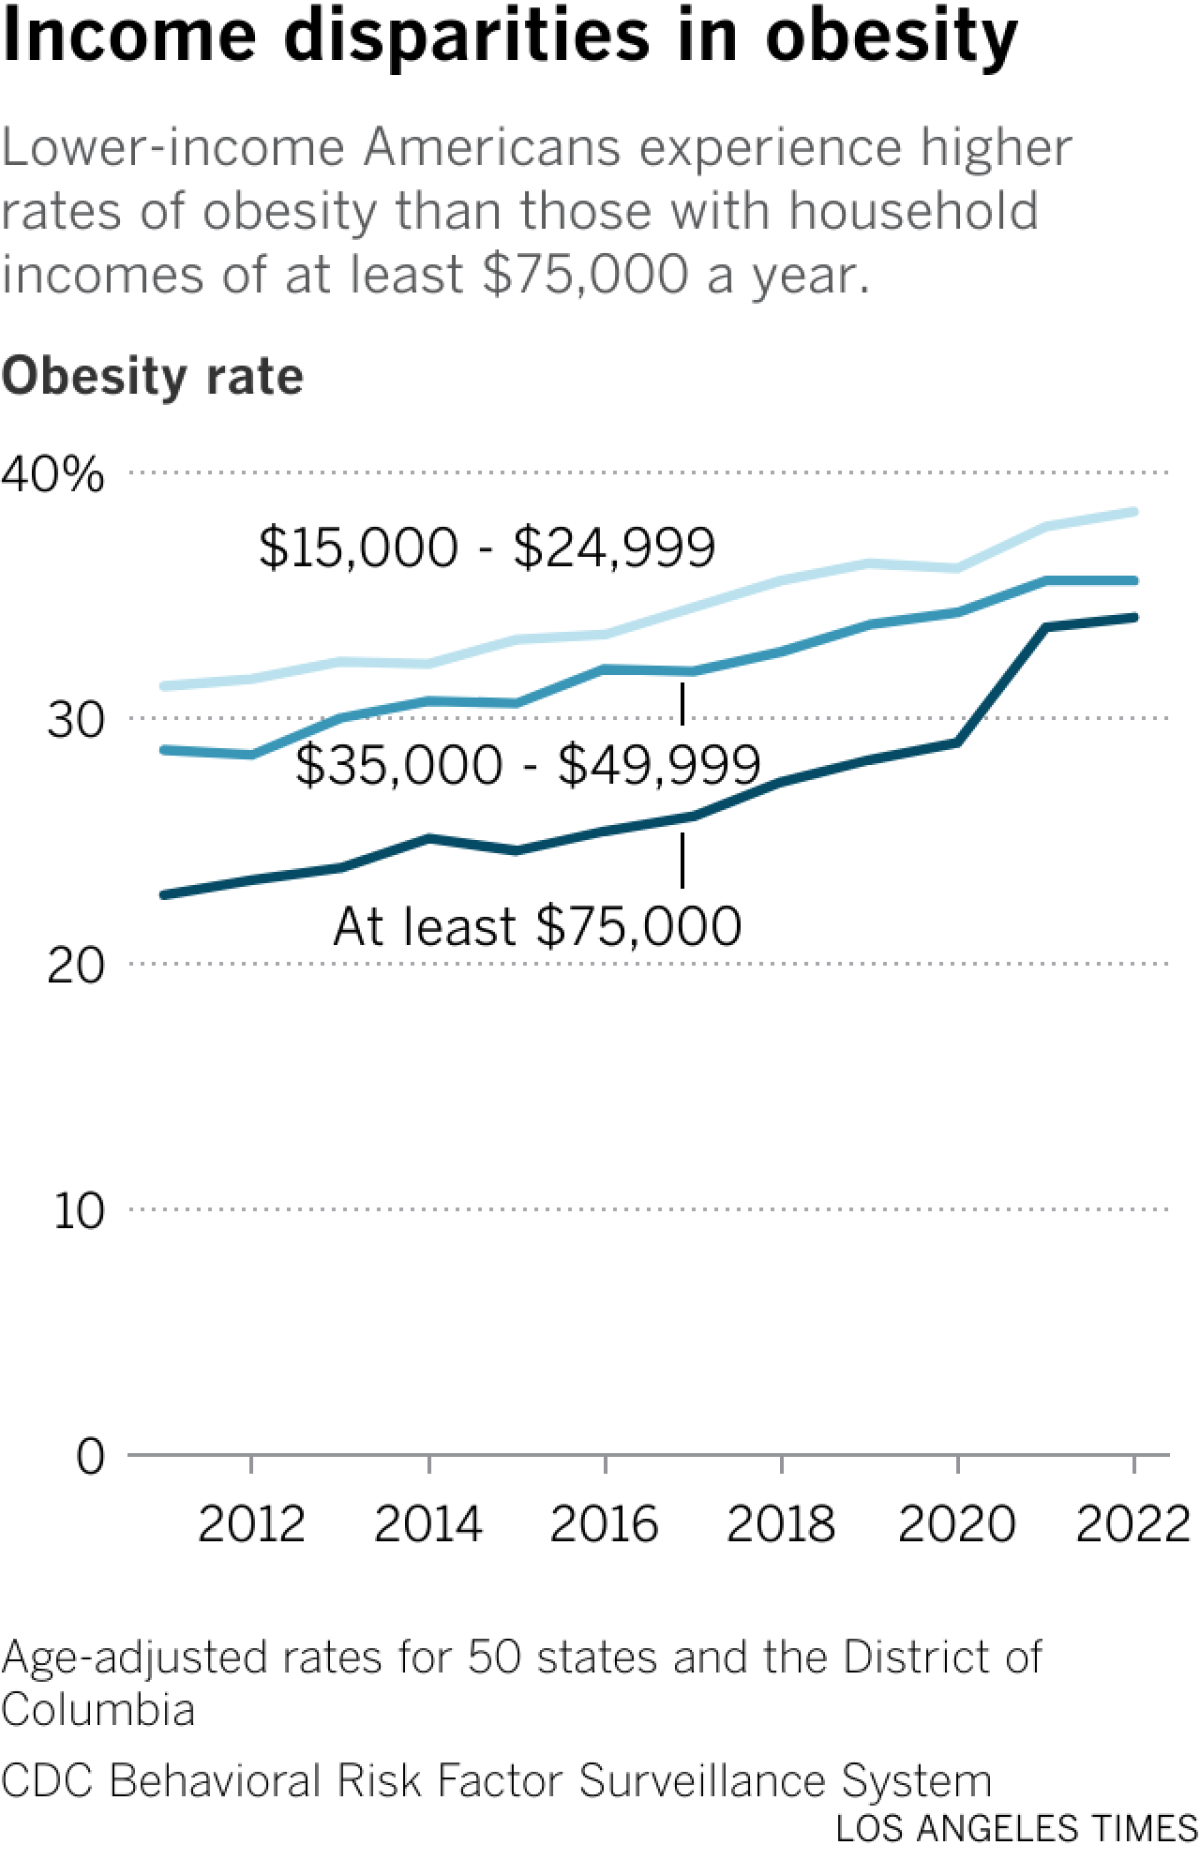 折线图显示了三个收入类别的肥胖率：15 至 26,000 美元、35 至 50,000 美元和至少 75,000 美元。 收入较低的人的利率较高，但所有类别的利率都在上升。